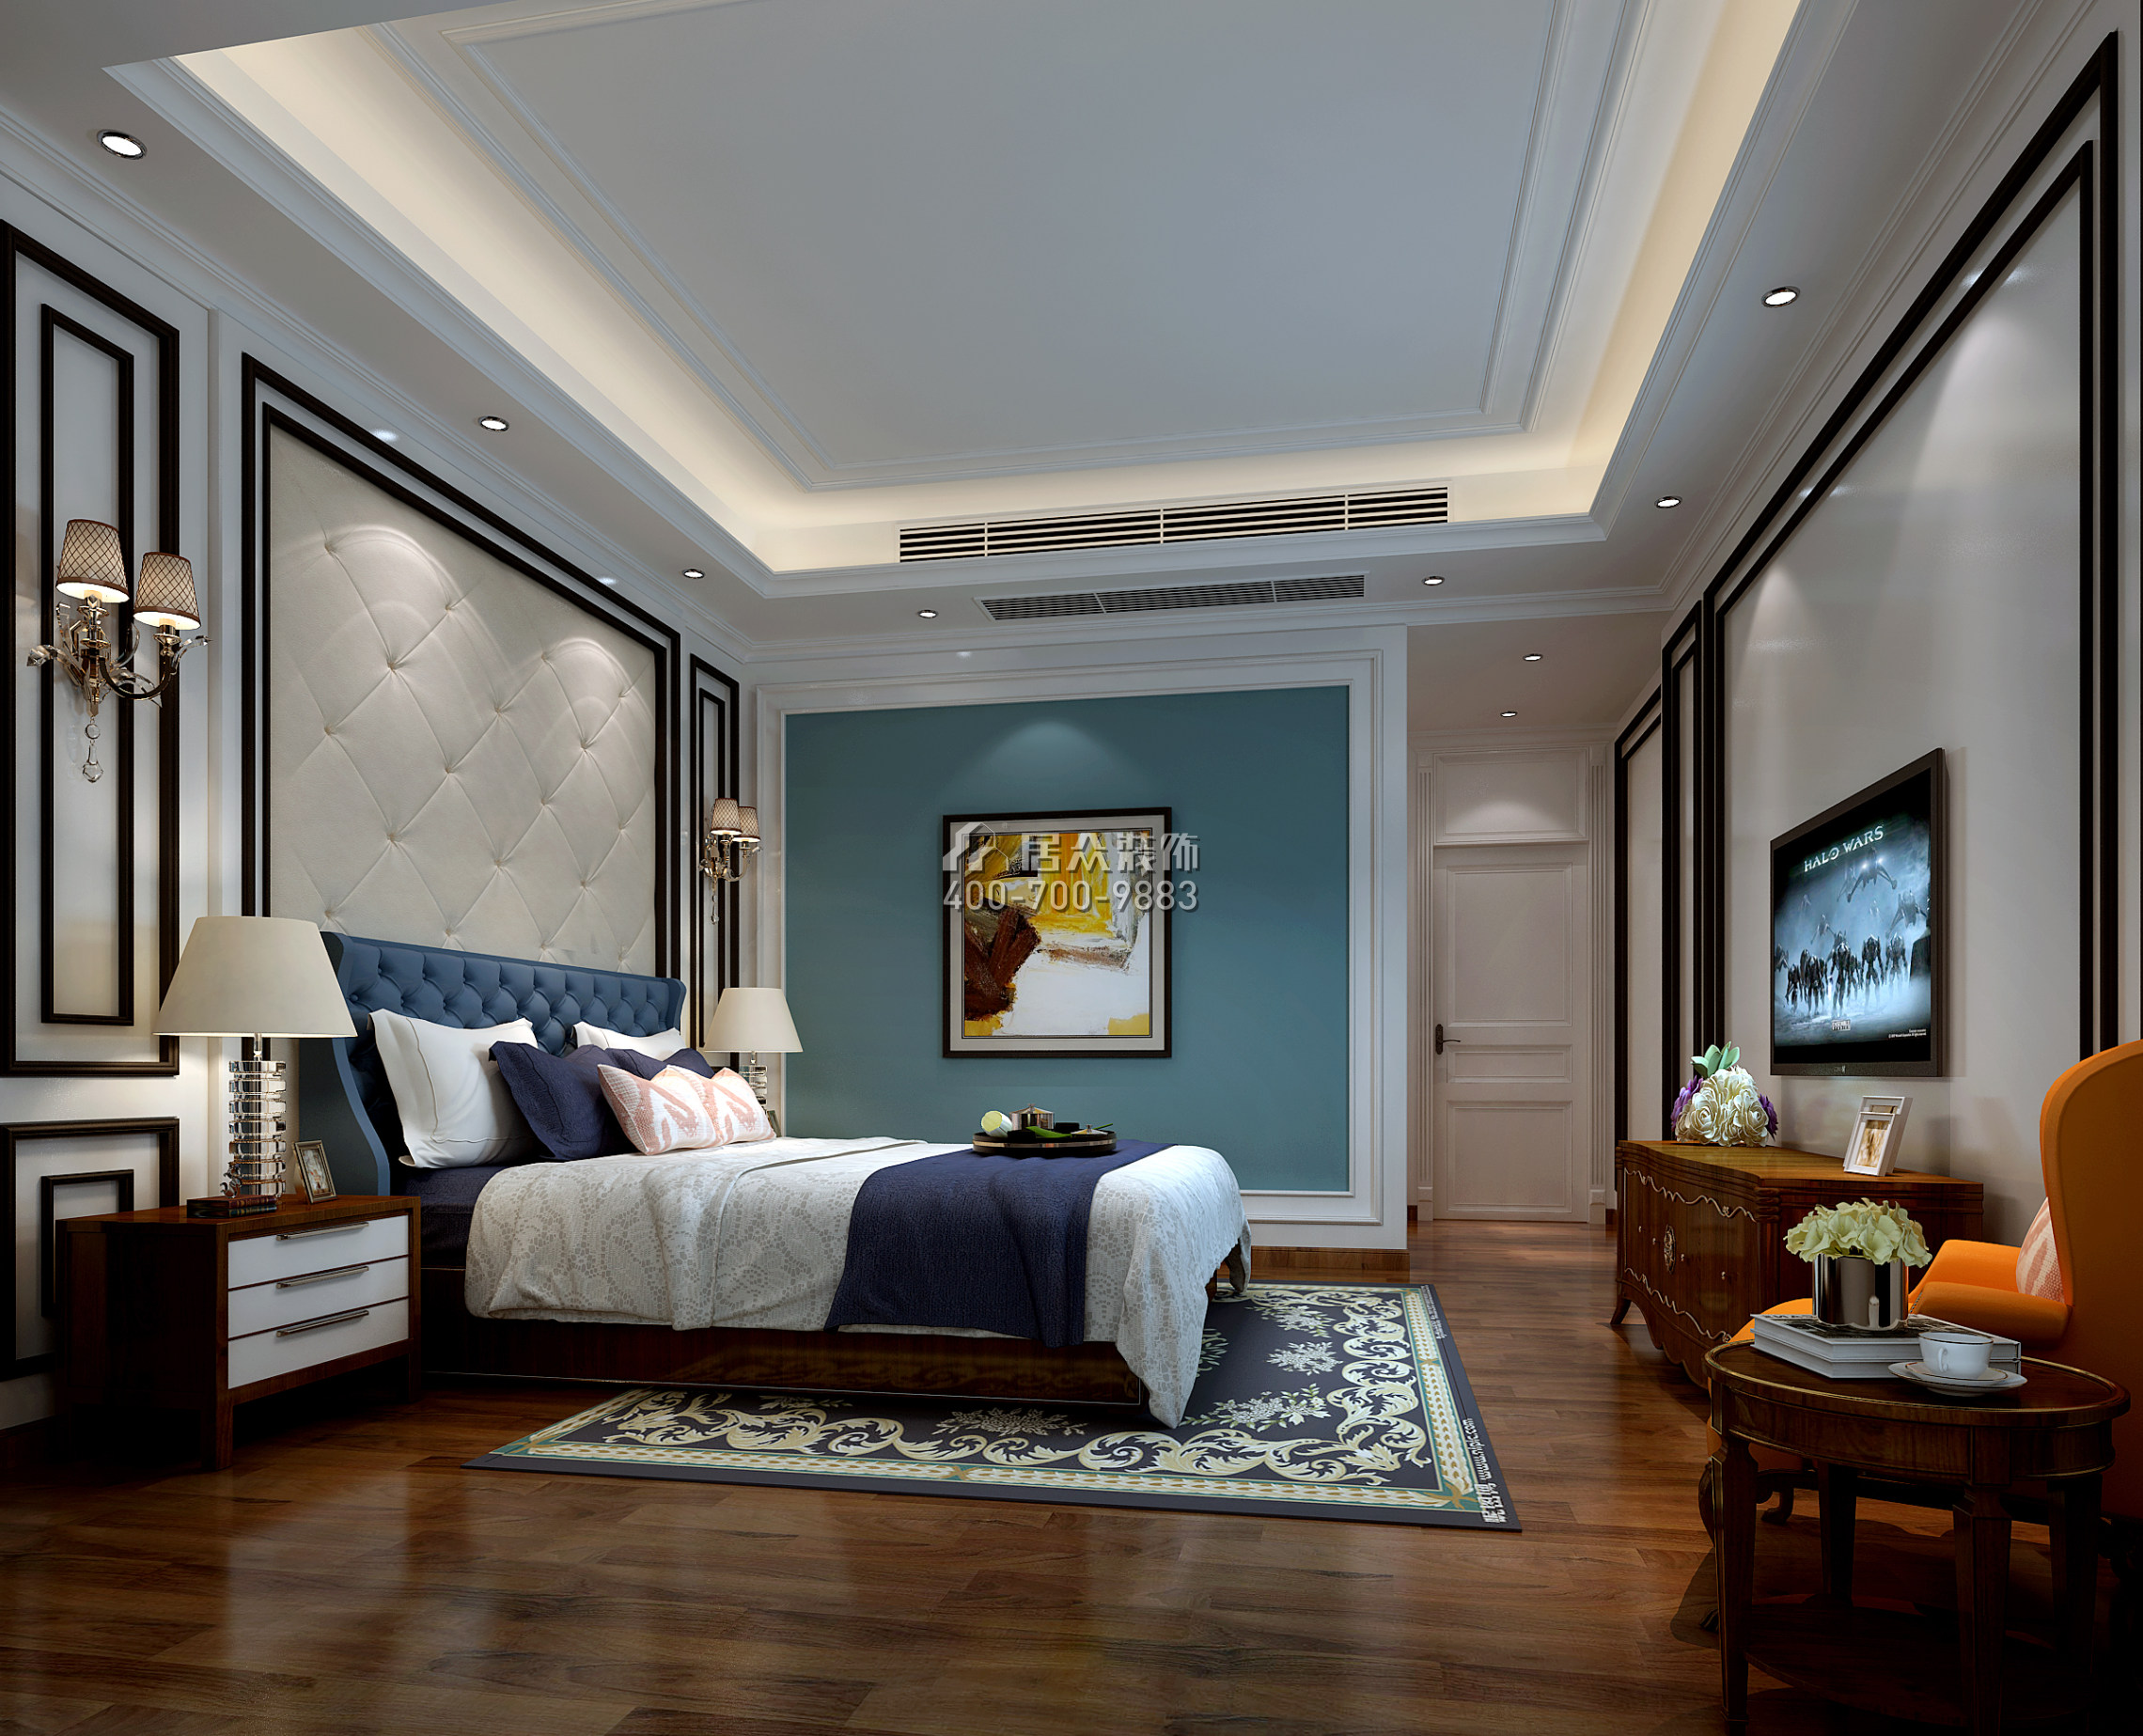 和胜天誉158平方米现代简约风格平层户型卧室装修效果图